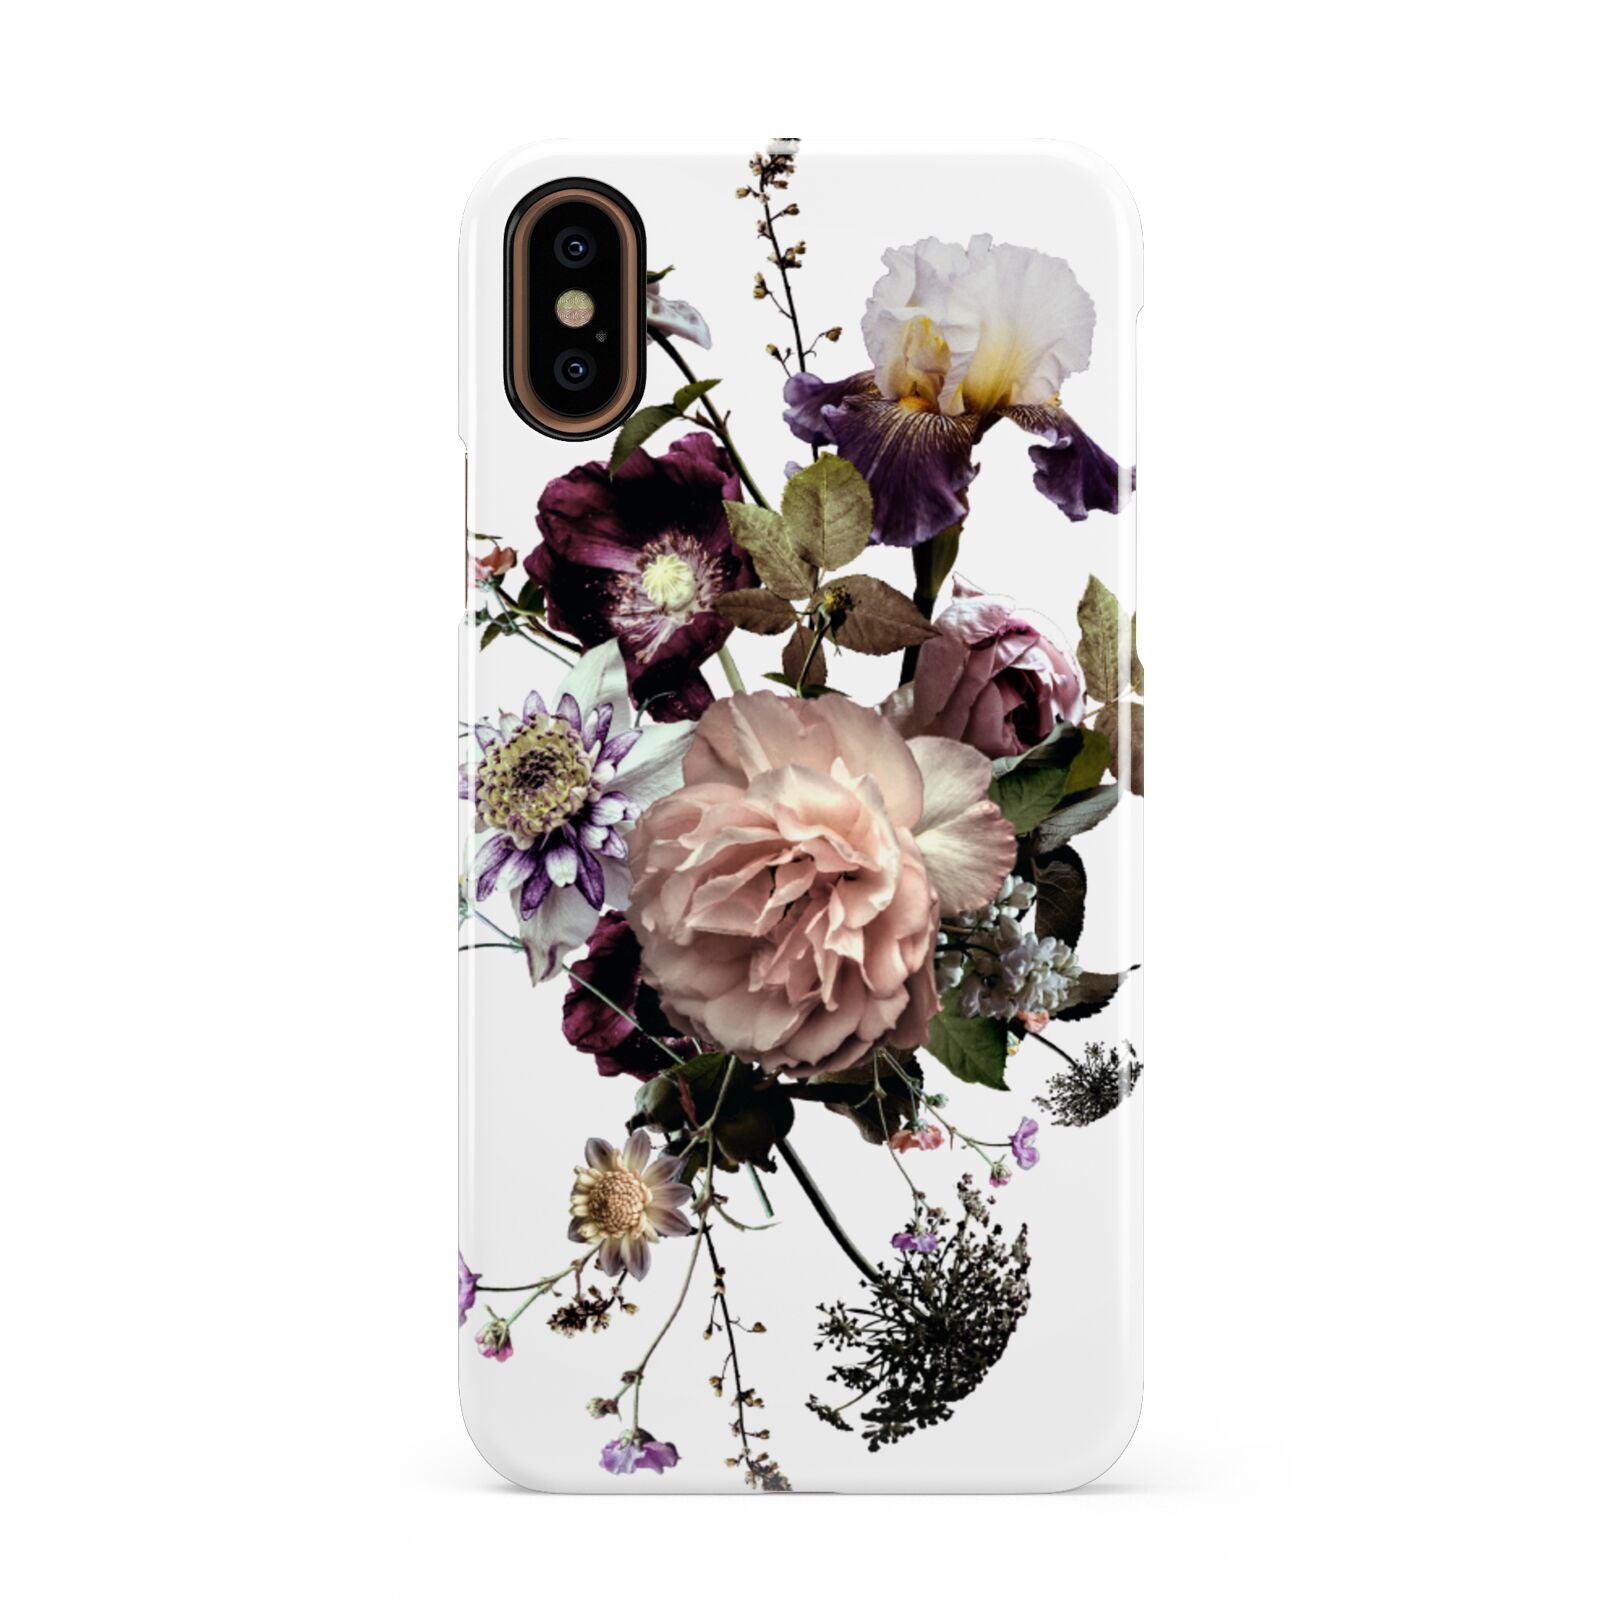 Vintage Flowers Apple iPhone XS 3D Snap Case